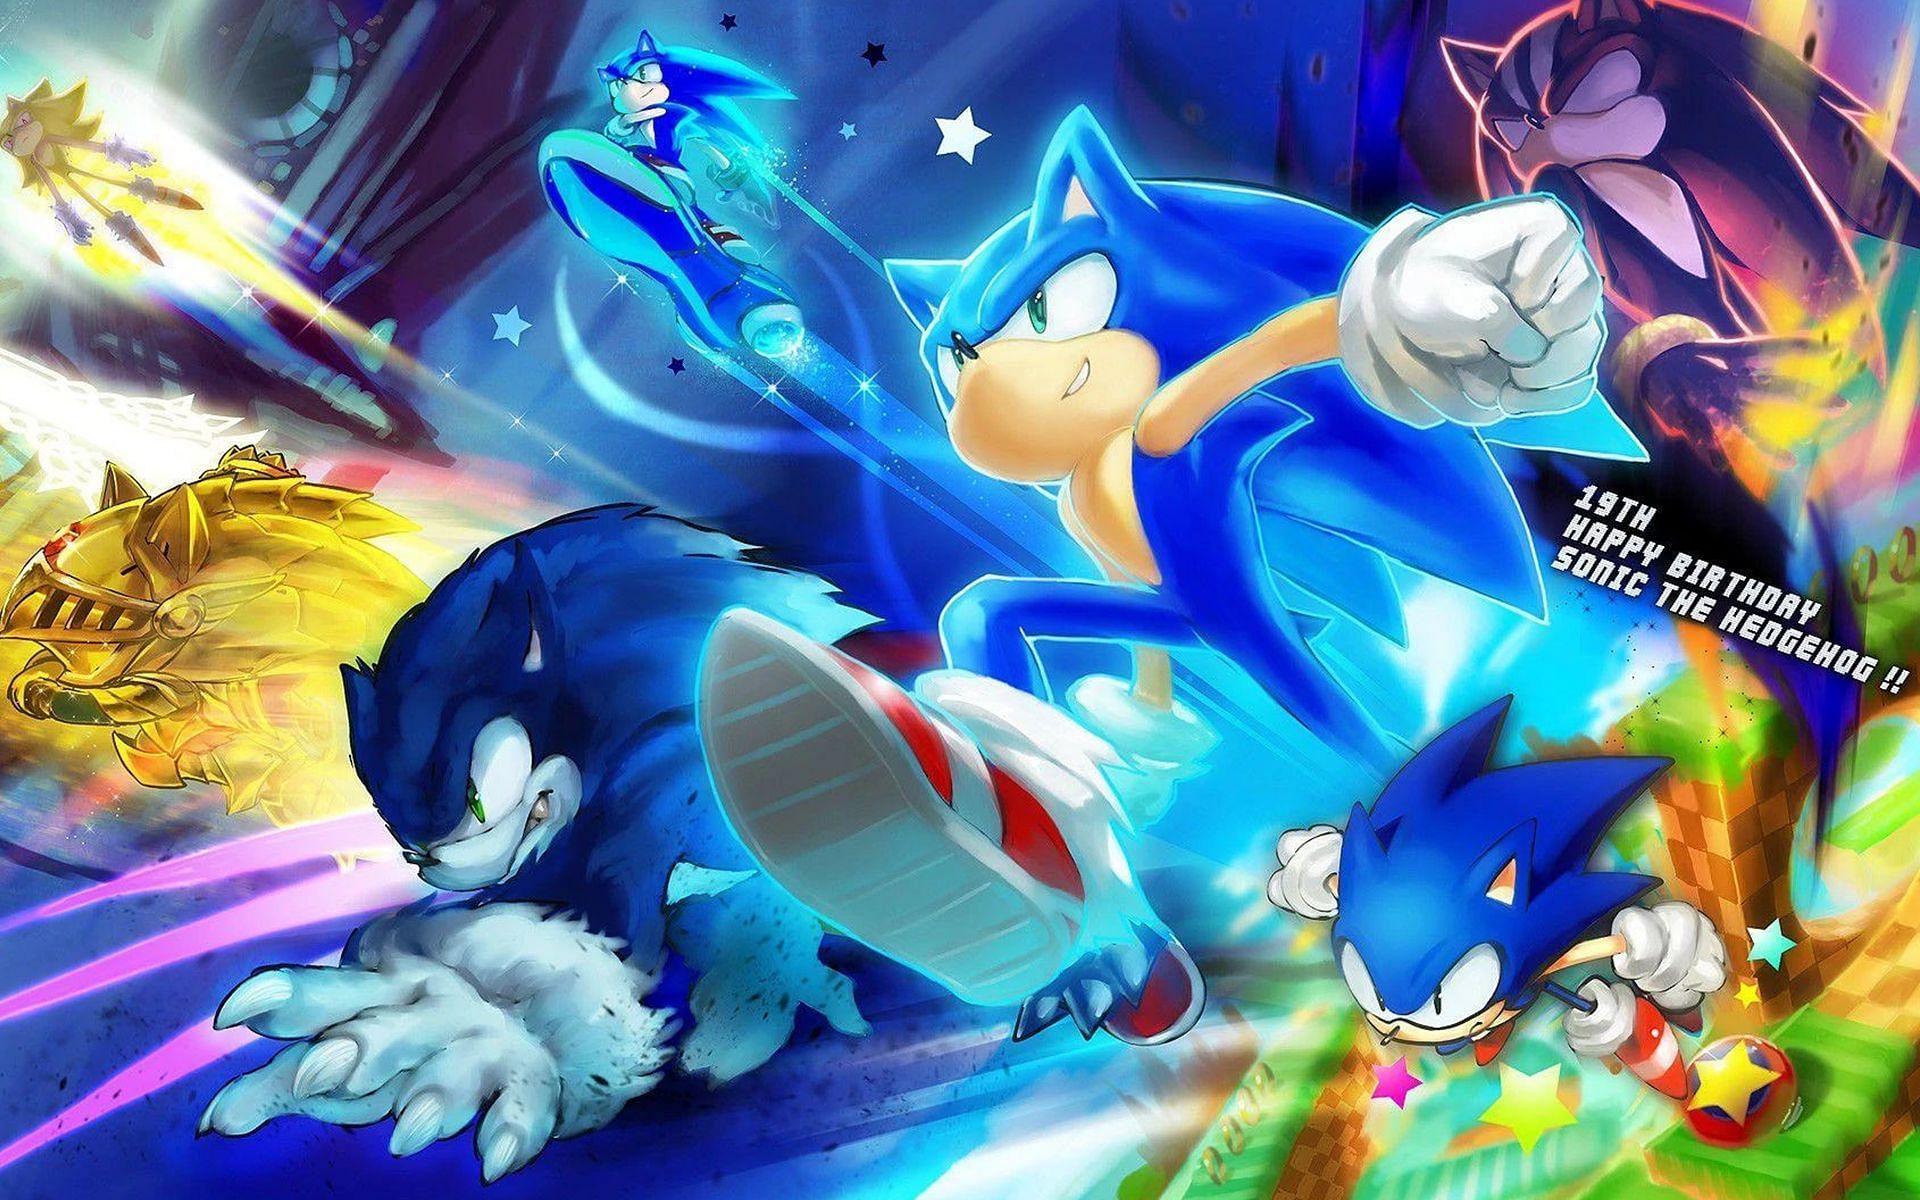 Sonic the Hedgehog returns for a sequel (Image via Sonic Fandom)